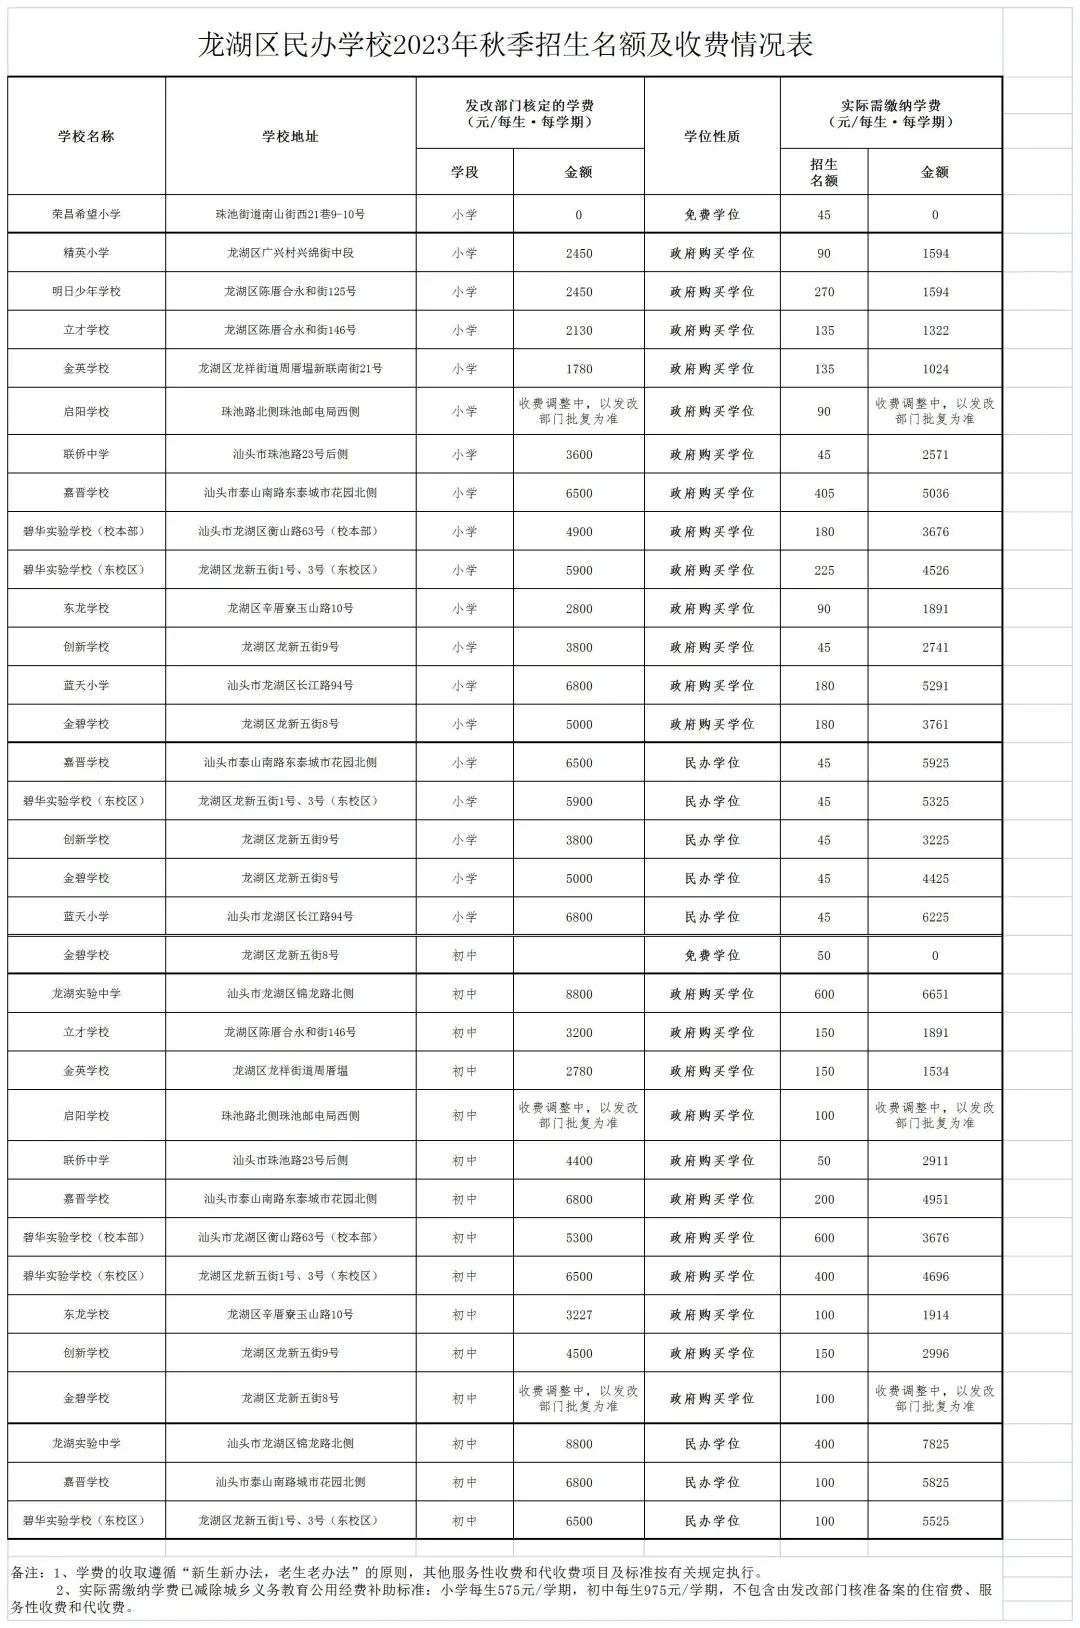 龙湖区民办学校2023年秋季招生名额及收费情况表